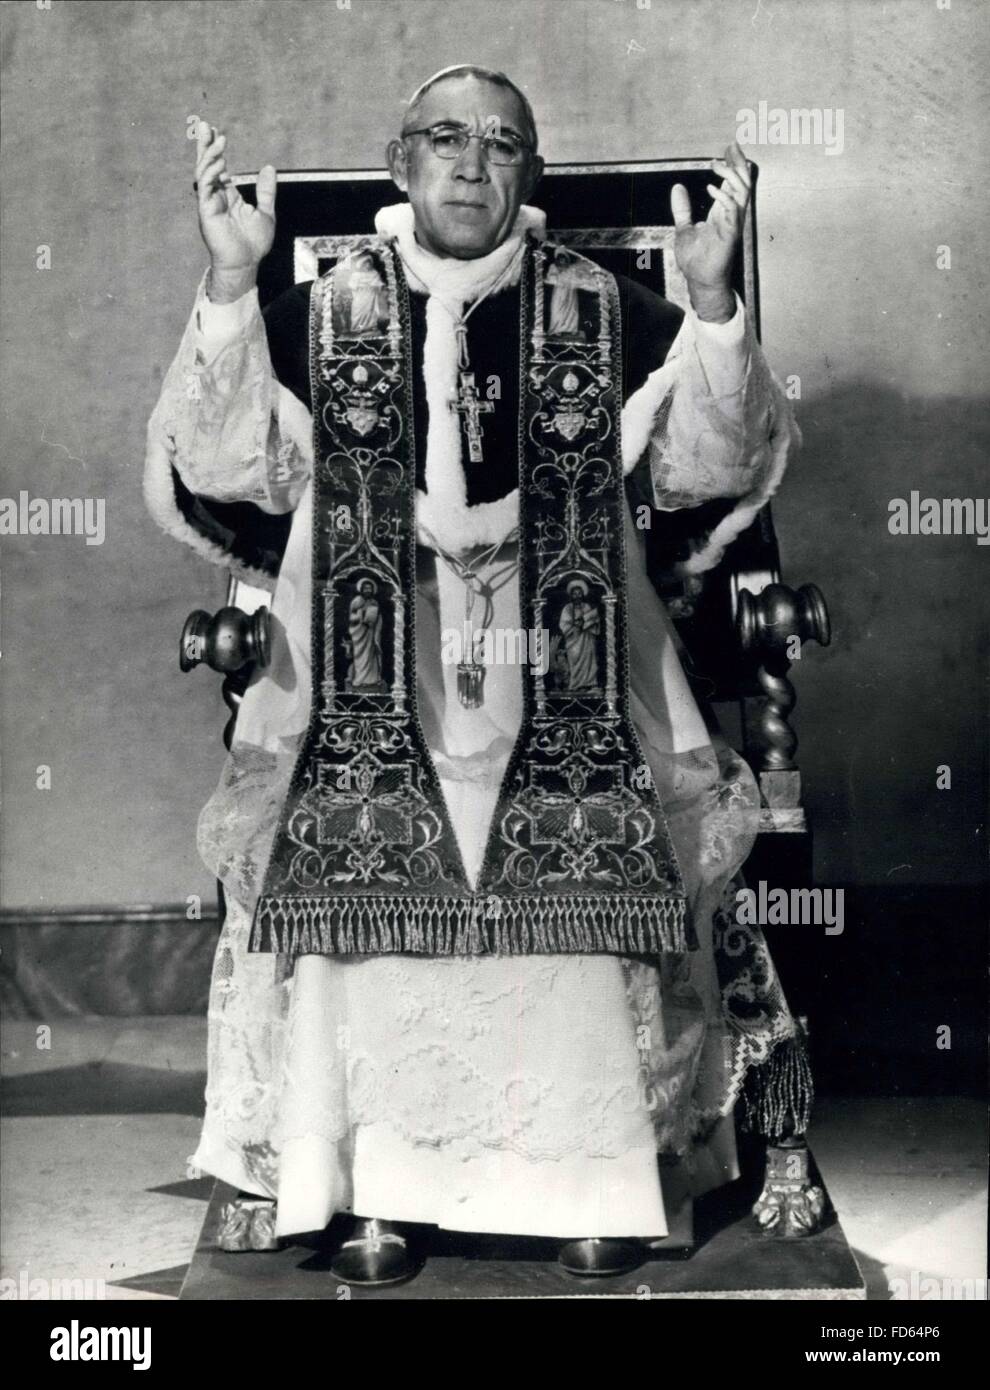 1968 - L'acteur Anthony Quinn l'homme en robe d'un blanc pur, il sedately se trouve le port de la robe blanche d'un Pape. L'homme de la photo ressemble chaque pouce un chef de l'Église de Rome. Mais le visage est sans équivoque, l'acteur Anthony Quinn est habillée pour son rôle dans le film La place du pêcheur l'histoire d'un archevêque russe qui devient pape. Le film est basé sur Morris s WestÃ meilleur vendeur. © Keystone Photos USA/ZUMAPRESS.com/Alamy Live News Banque D'Images